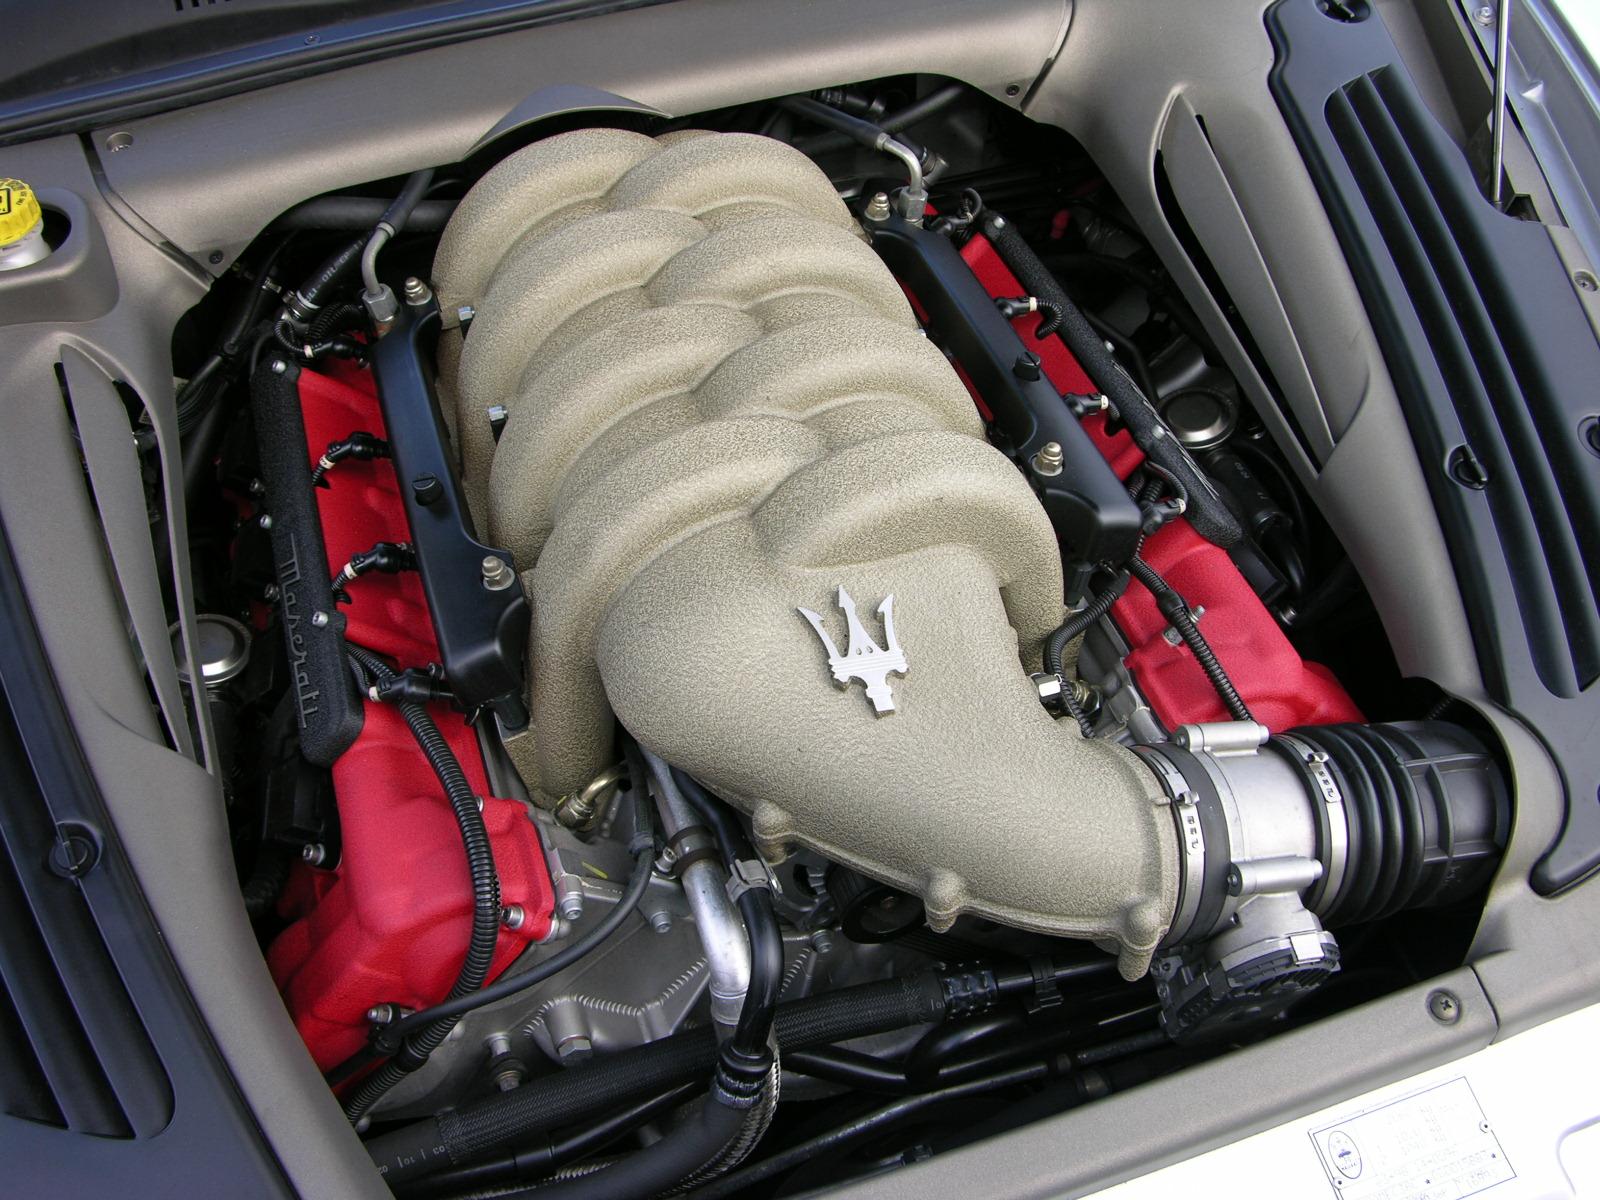 Двигатель мазерати. Двигатель Мазерати Кватропорте 4.2 v8. Maserati моторы 2.8 v6. Мотор 2.8 Мазерати Кватропорте. Мотор Мазерати v16.